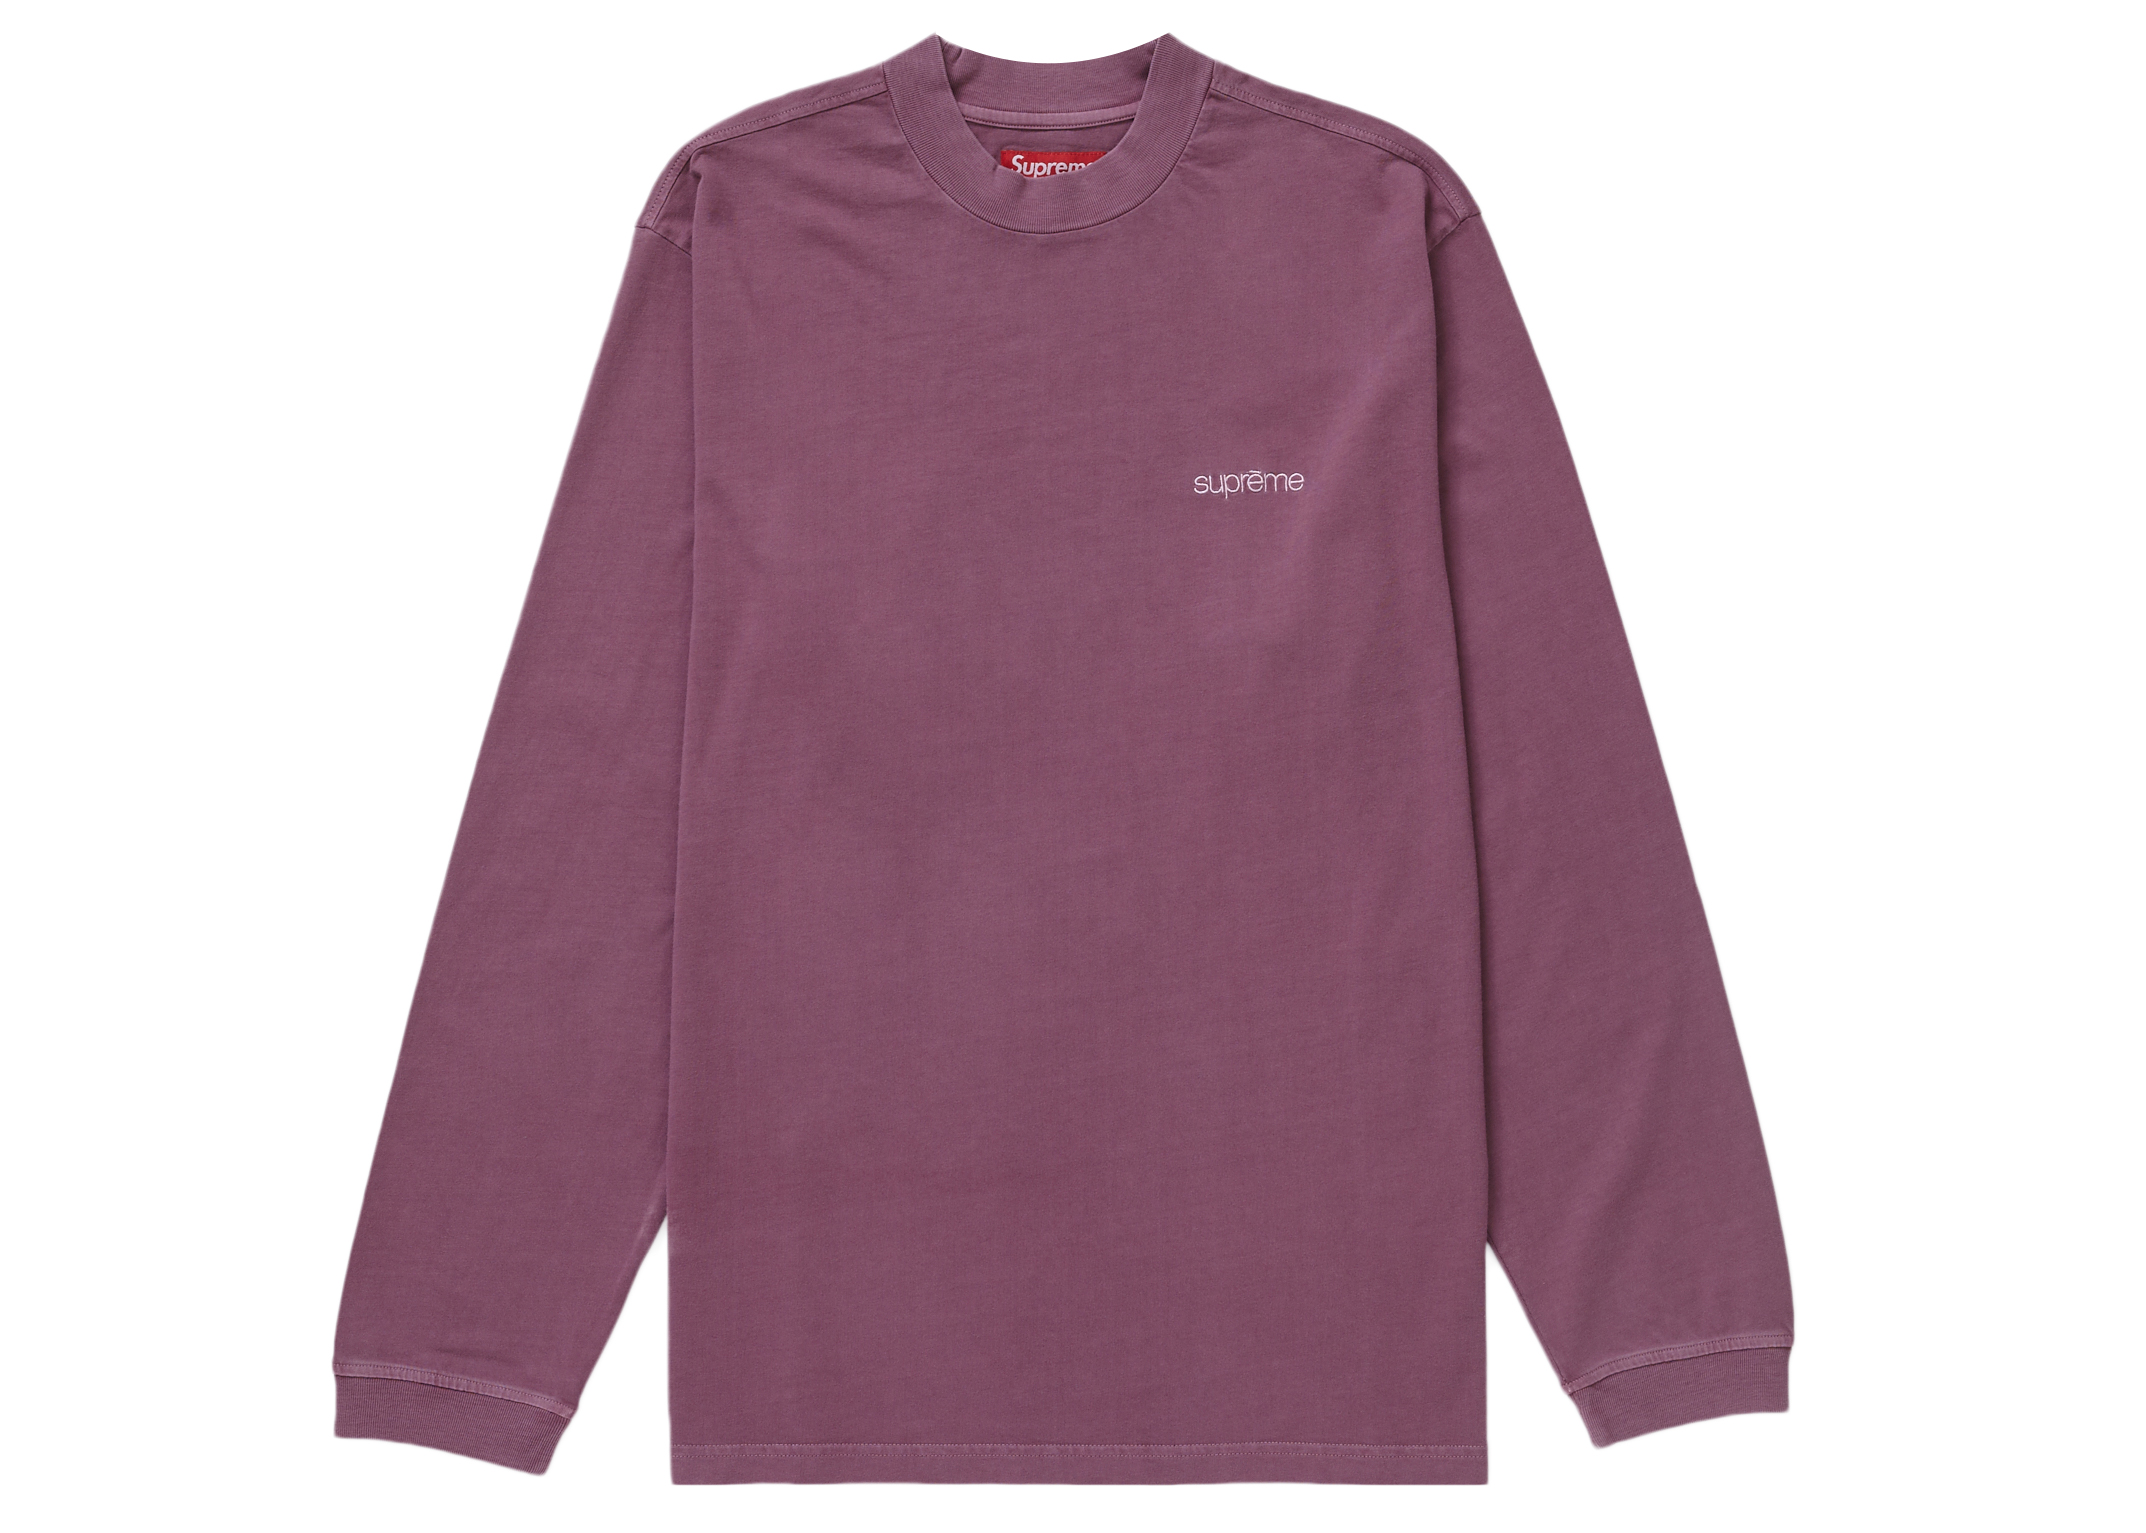 Supreme Mens T Shirt Spikes White Size XXL 2XL Gundam Purple Brand New NY  945